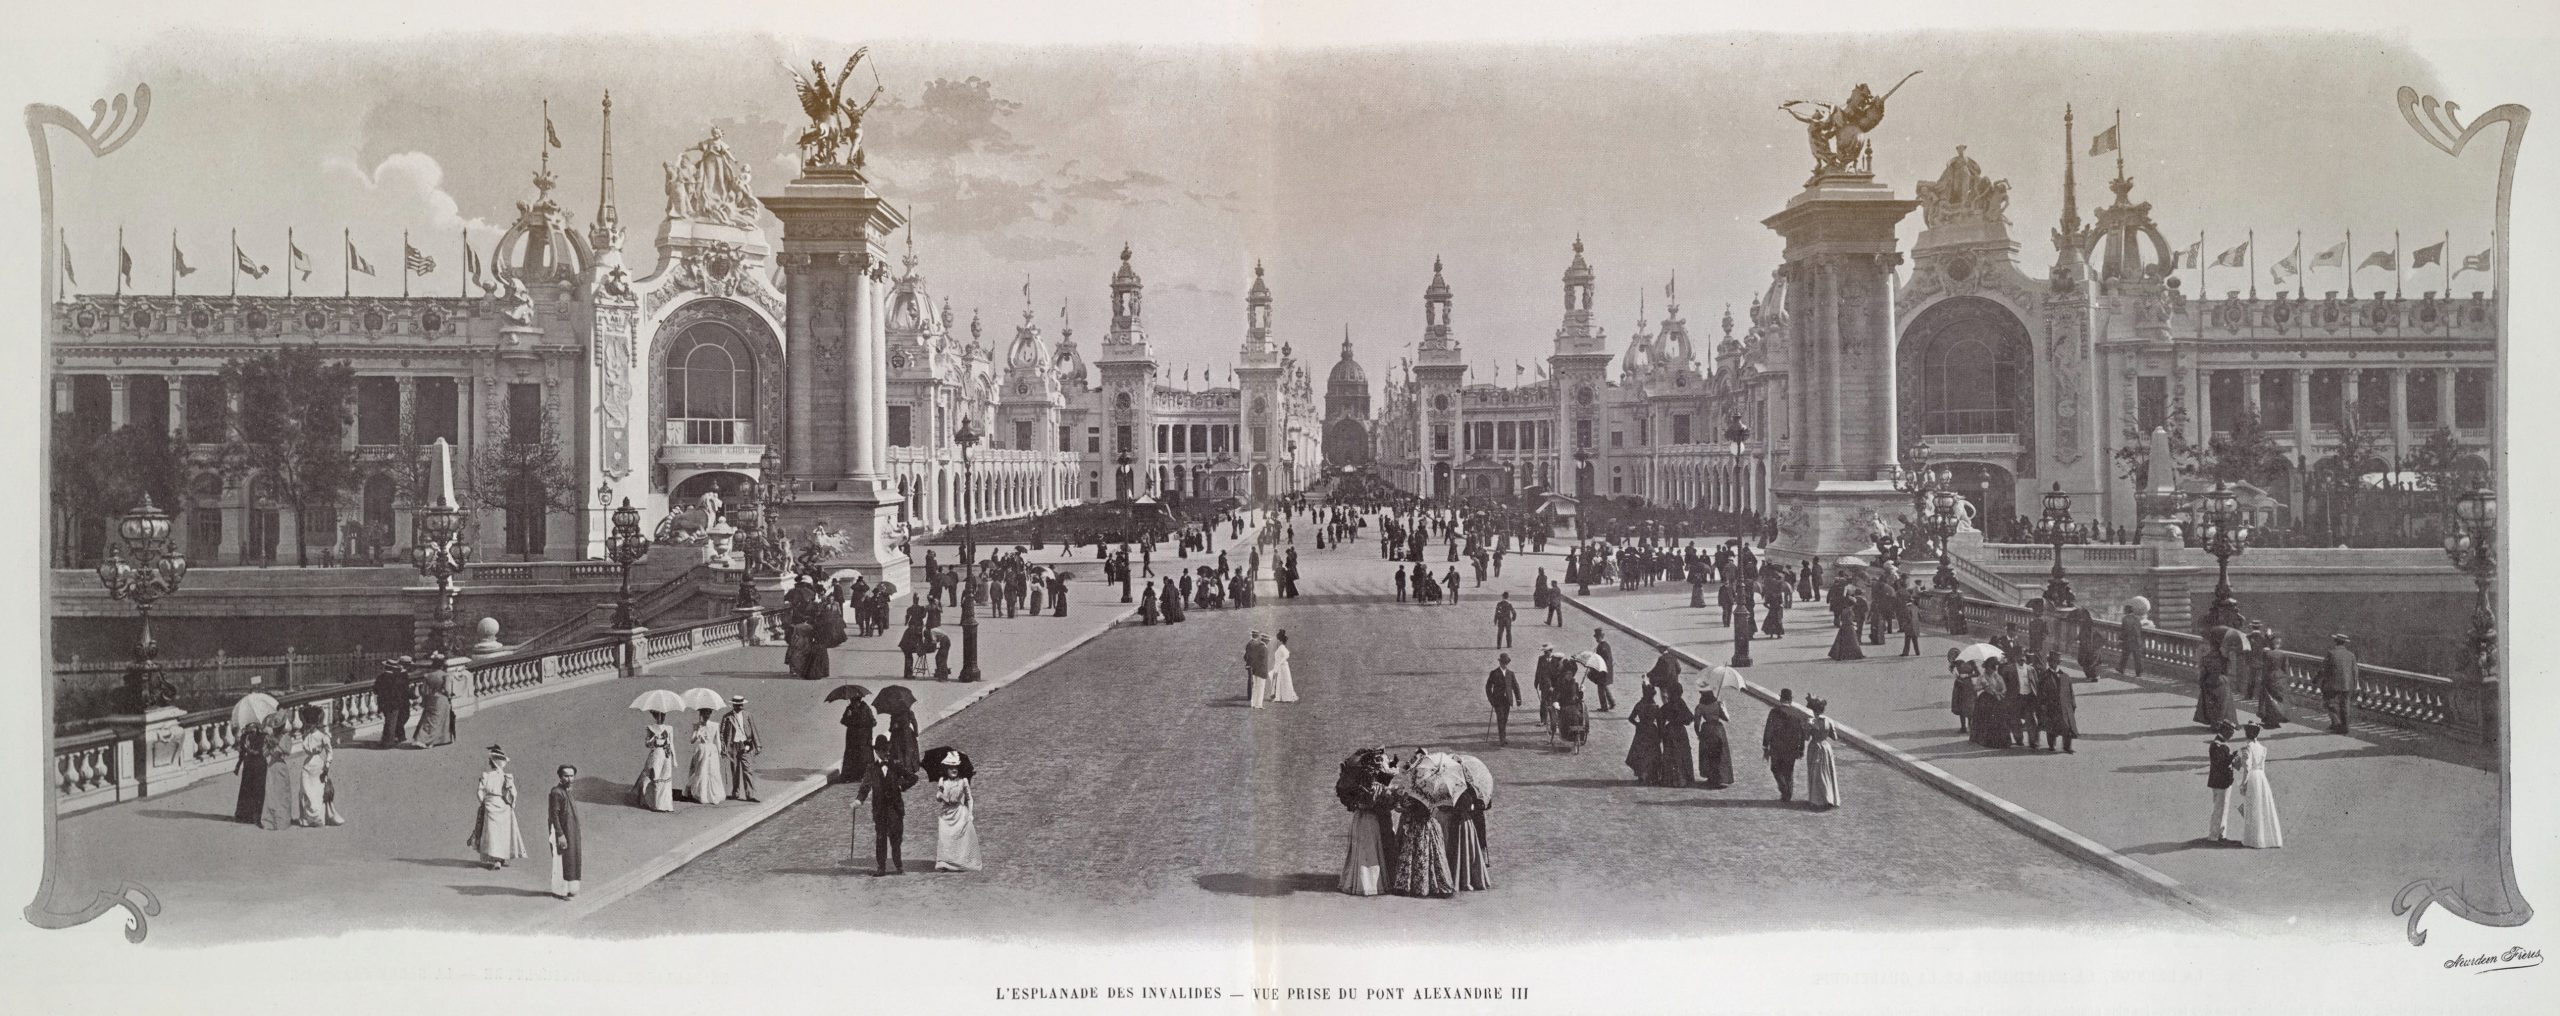 L'esplanade_des_Invalides,_vue_prise_du_pont_Alexandre_III,_Exposition_universelle_internationale_de_1900